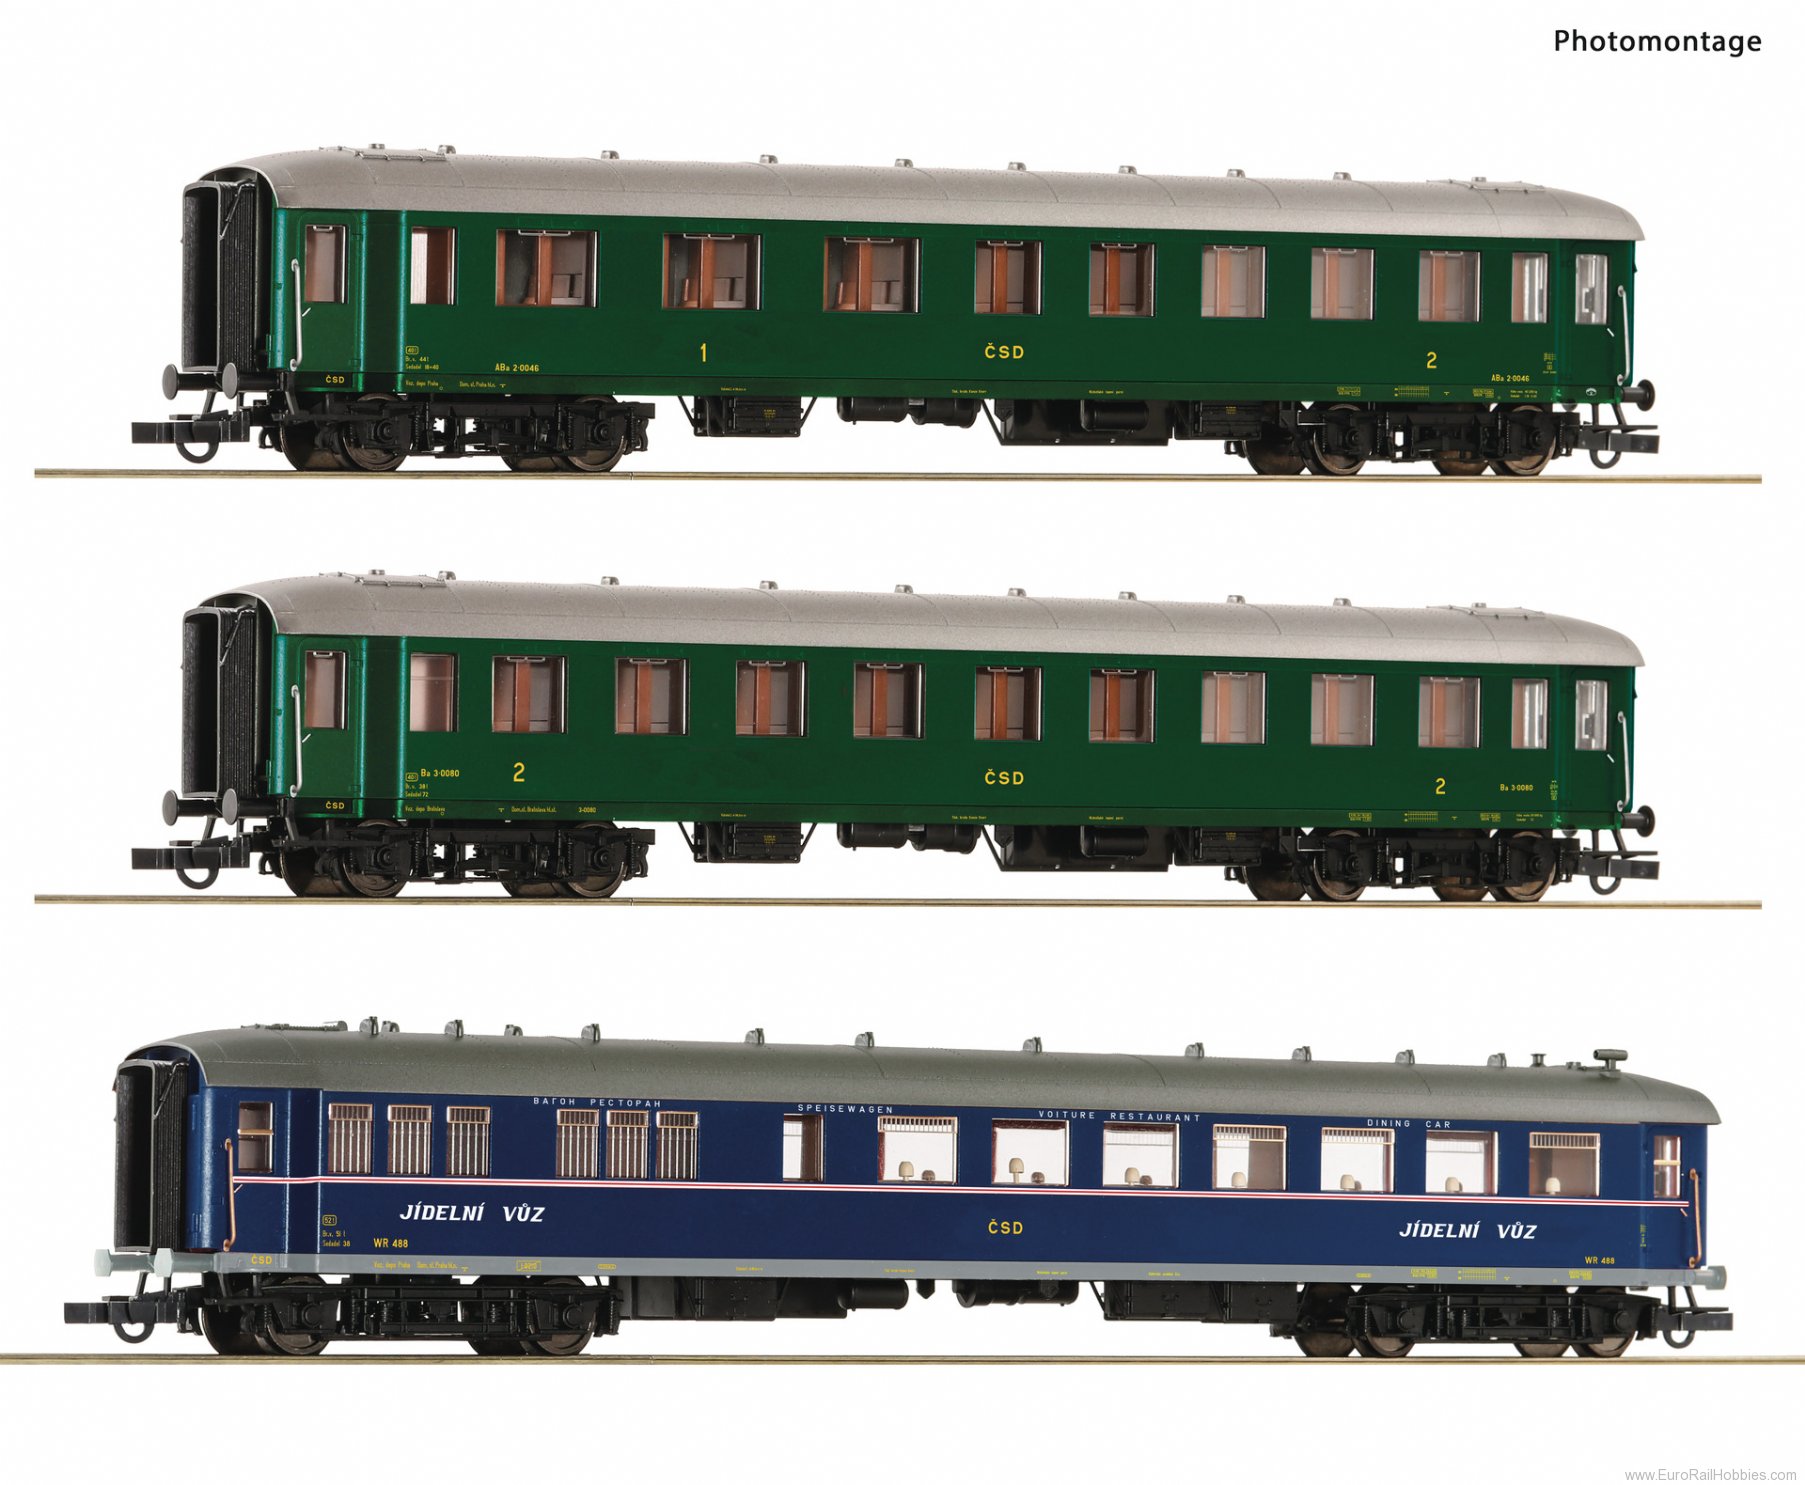 Roco 6200036 3 piece set 1: Express train coaches, CSD